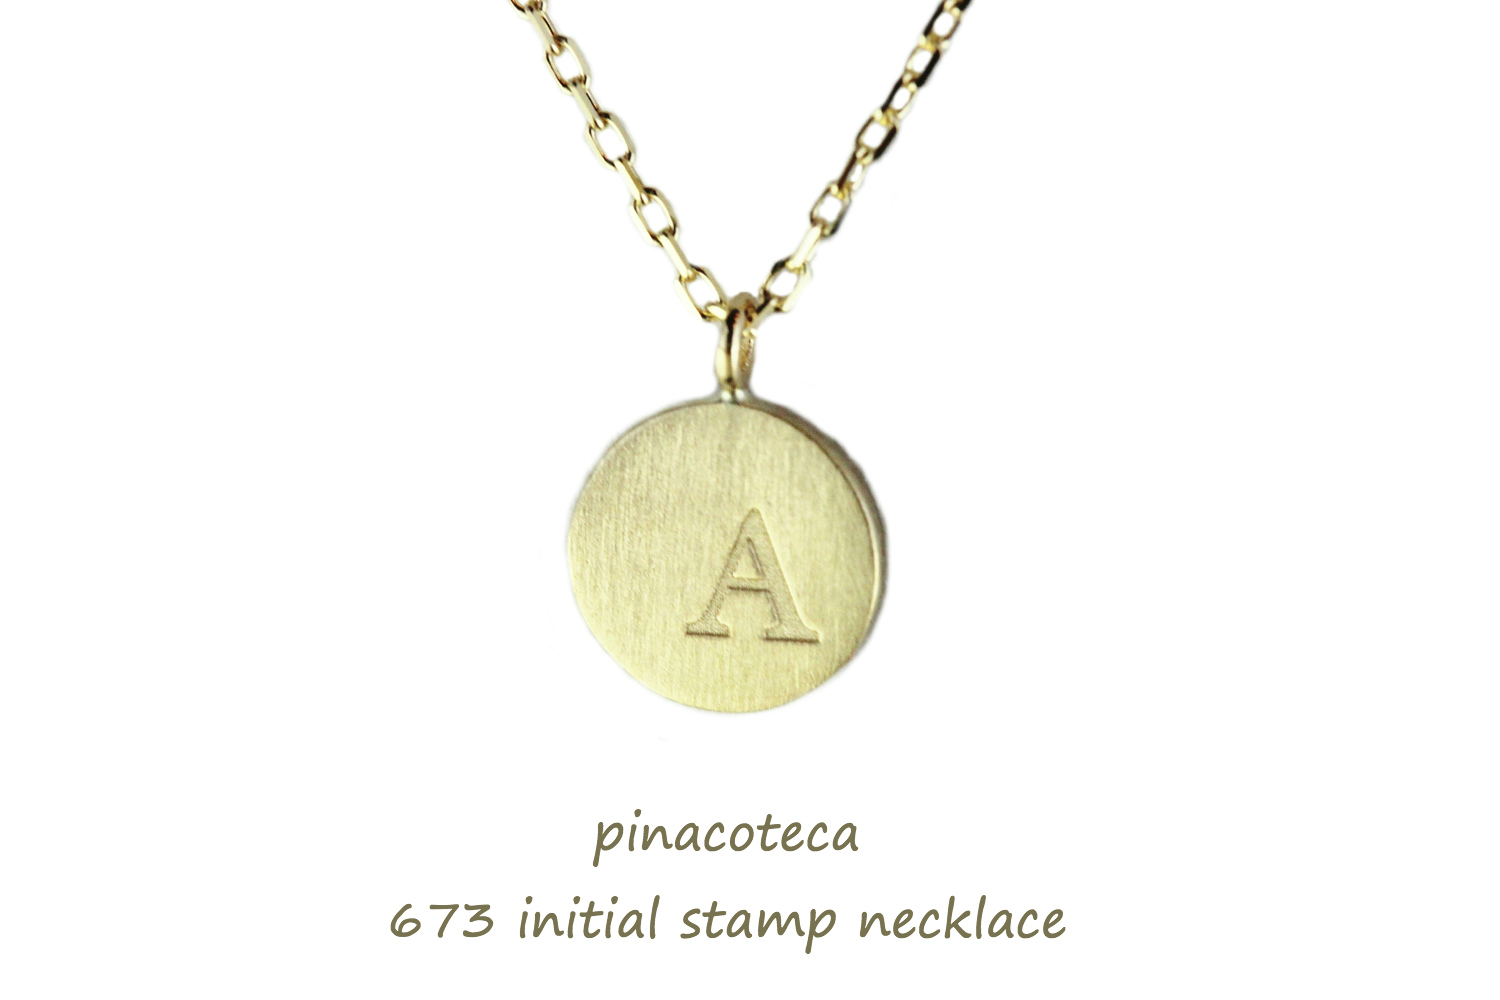 ピナコテーカ 673 スタンプ イニシャル ナンバー 数字 華奢ネックレス 18金,pinacoteca Stamp Initial Number Necklace K18